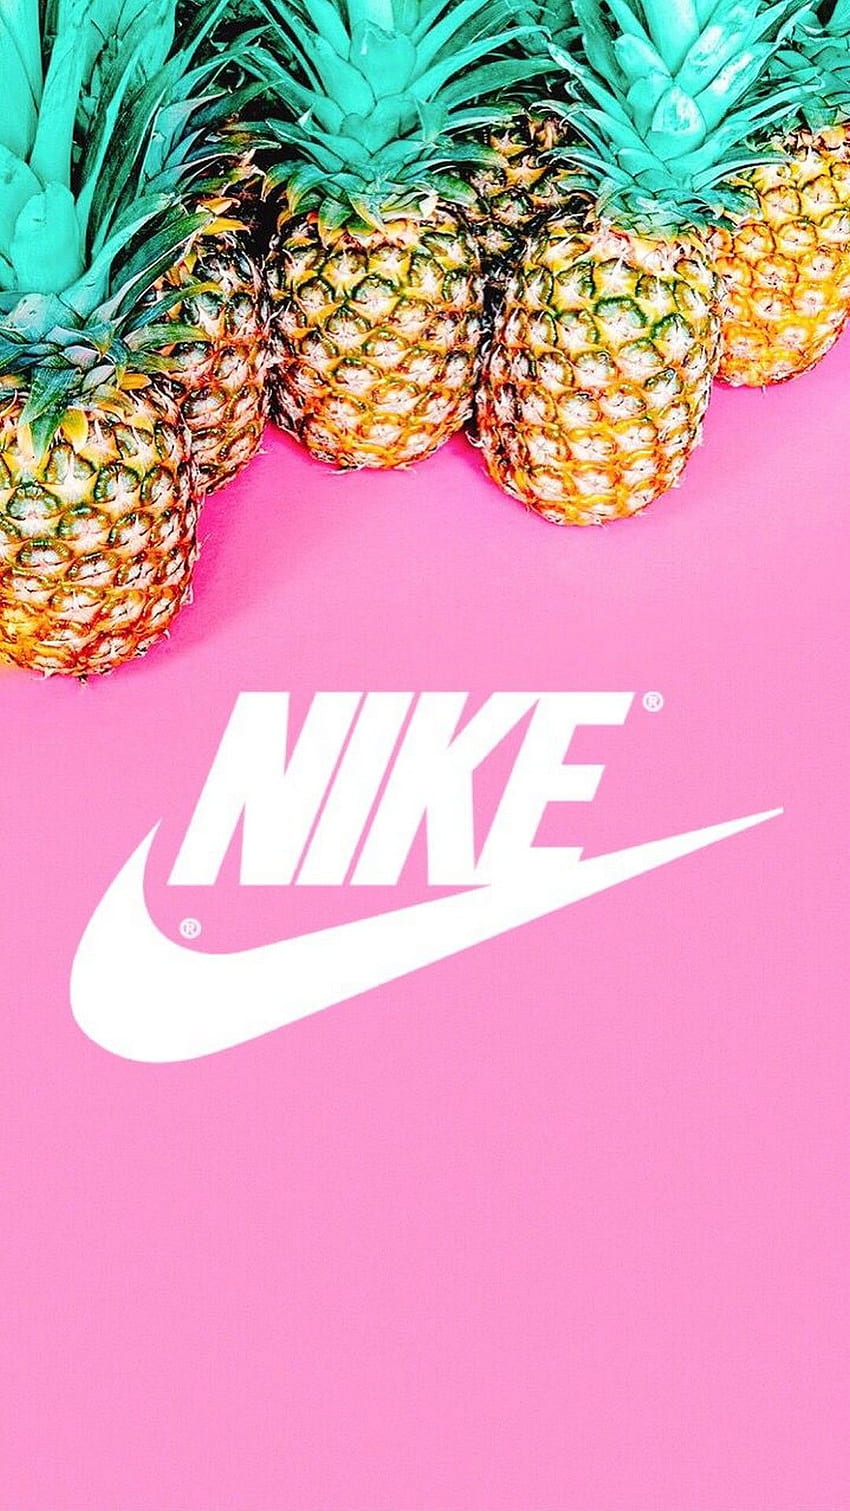 Bạn là một fan của Nike, yêu thích mùi vị tươi ngon của dứa và màu hồng đầy sức sống? Hãy đến và chiêm ngưỡng hình ảnh Nike Pineapple Pink Background để được trải nghiệm sự kết hợp tuyệt vời này!